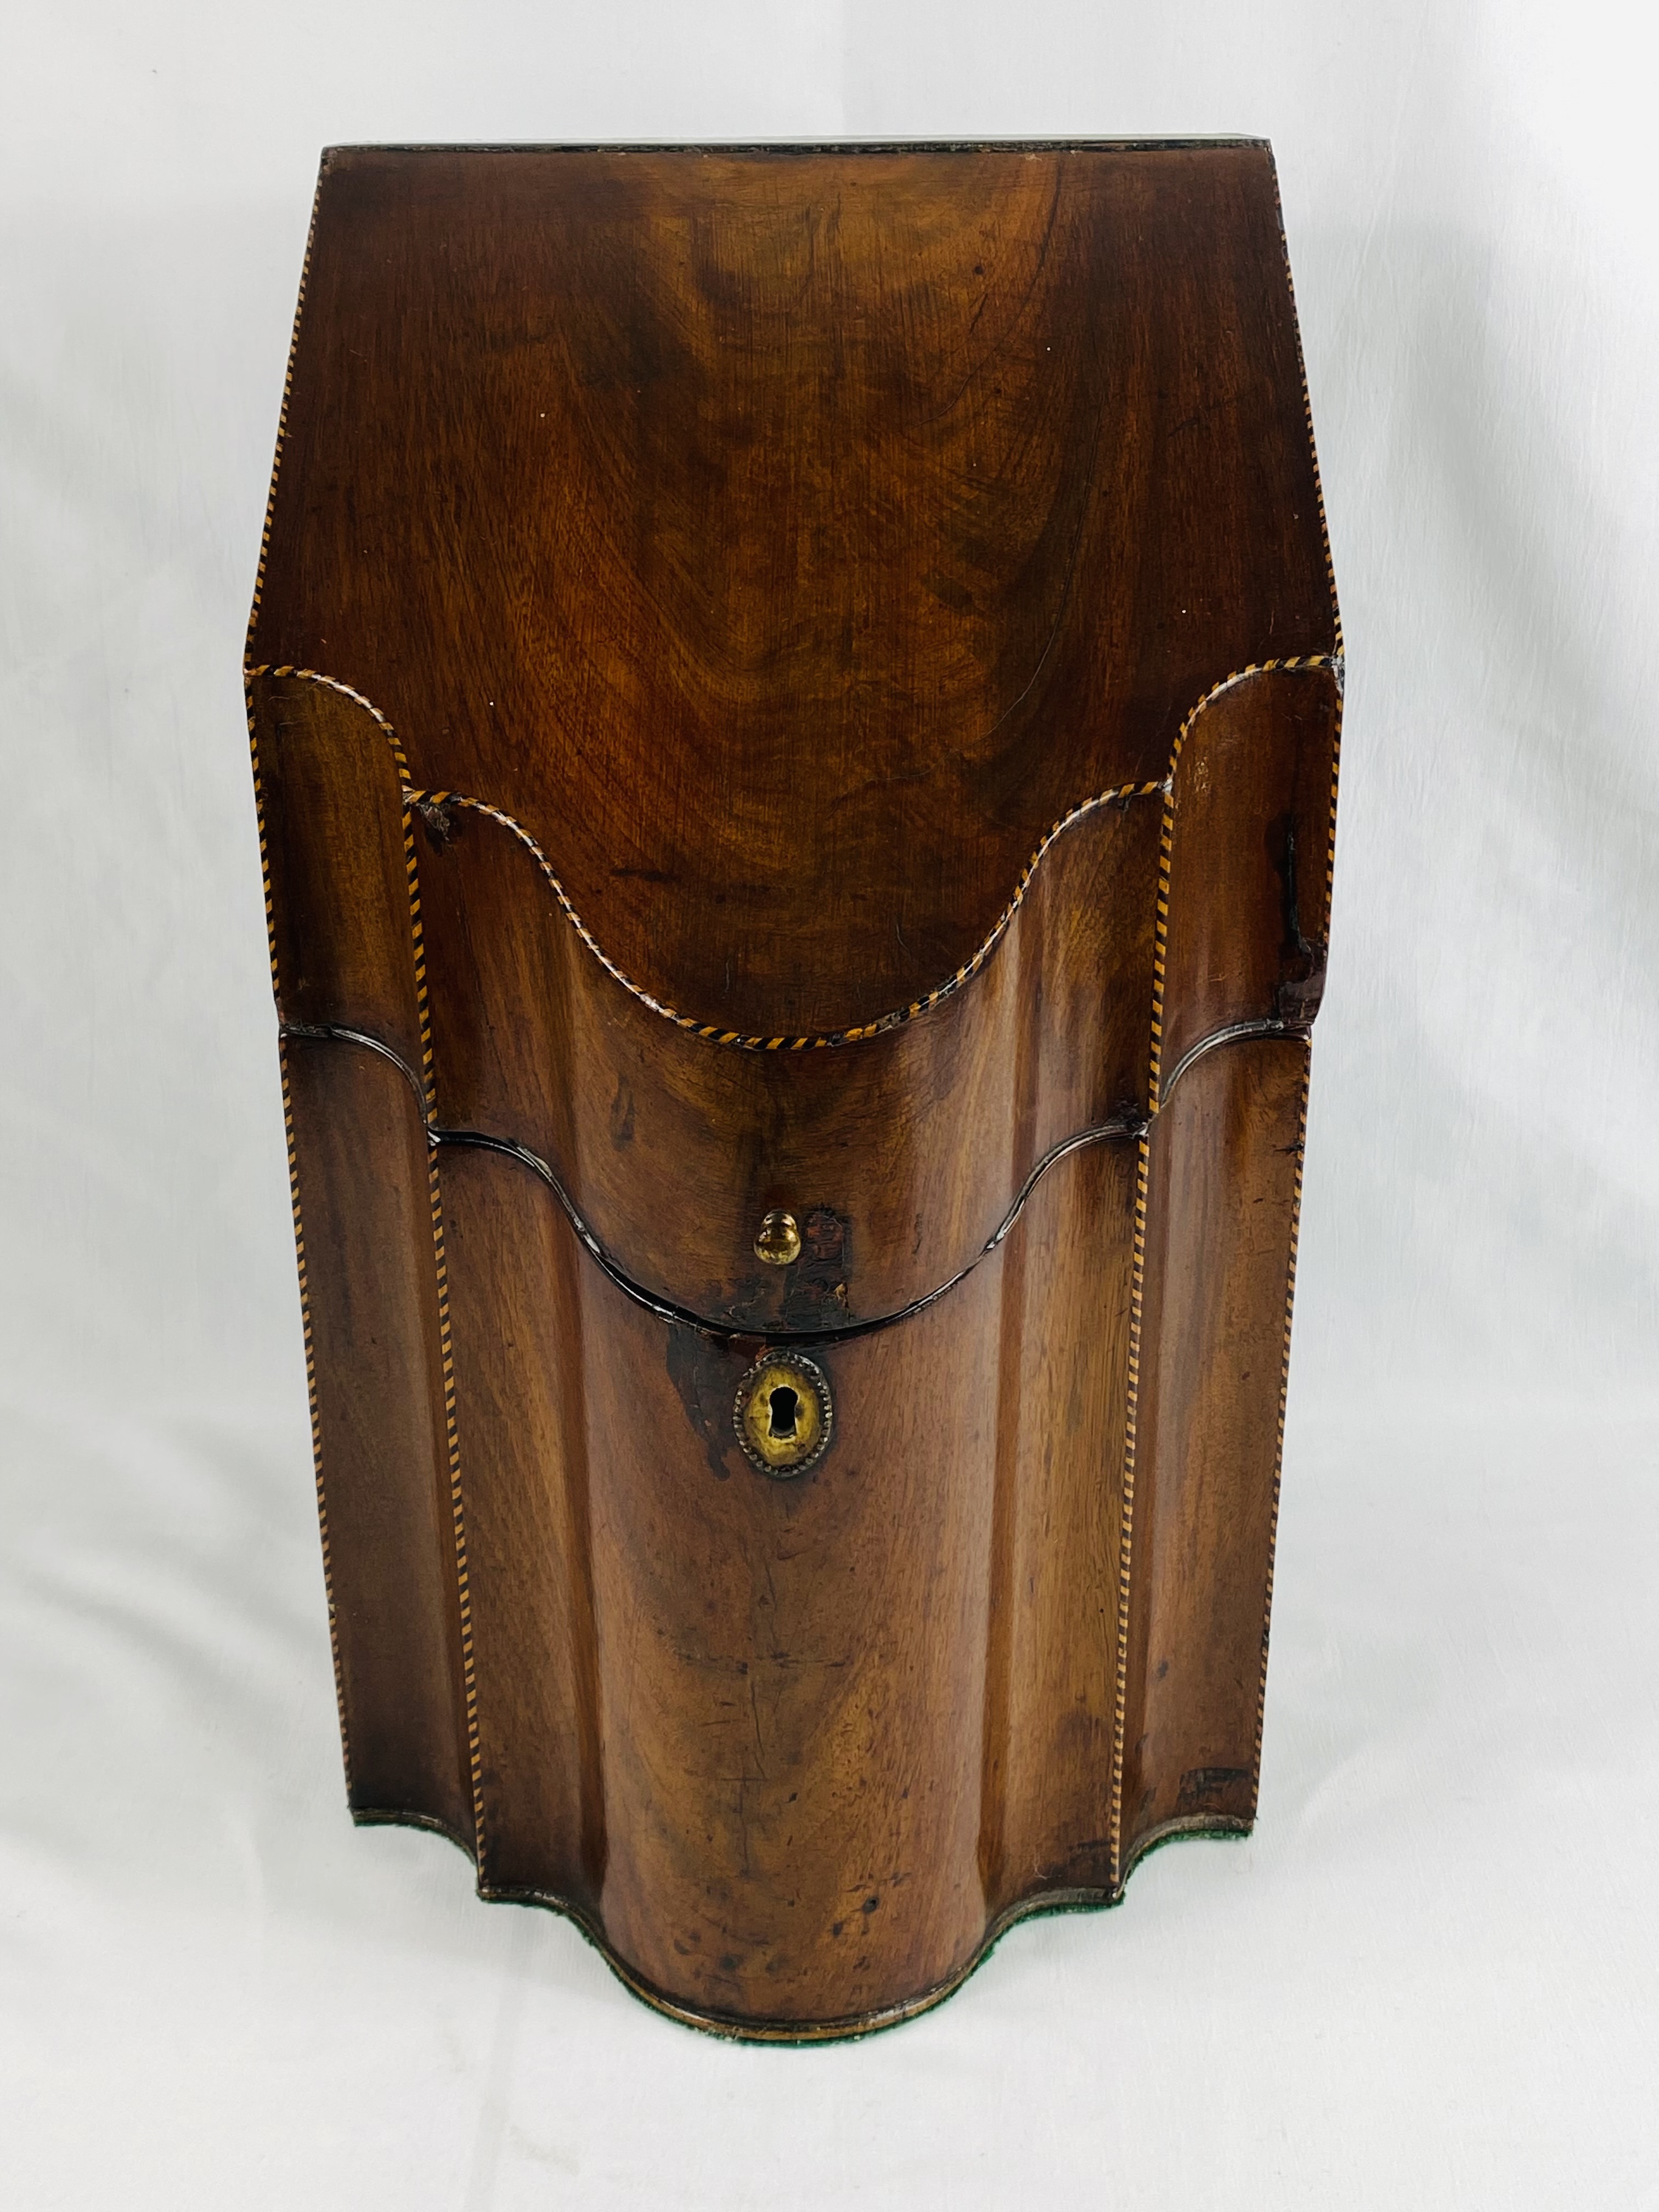 19th century mahogany knife box with original interior